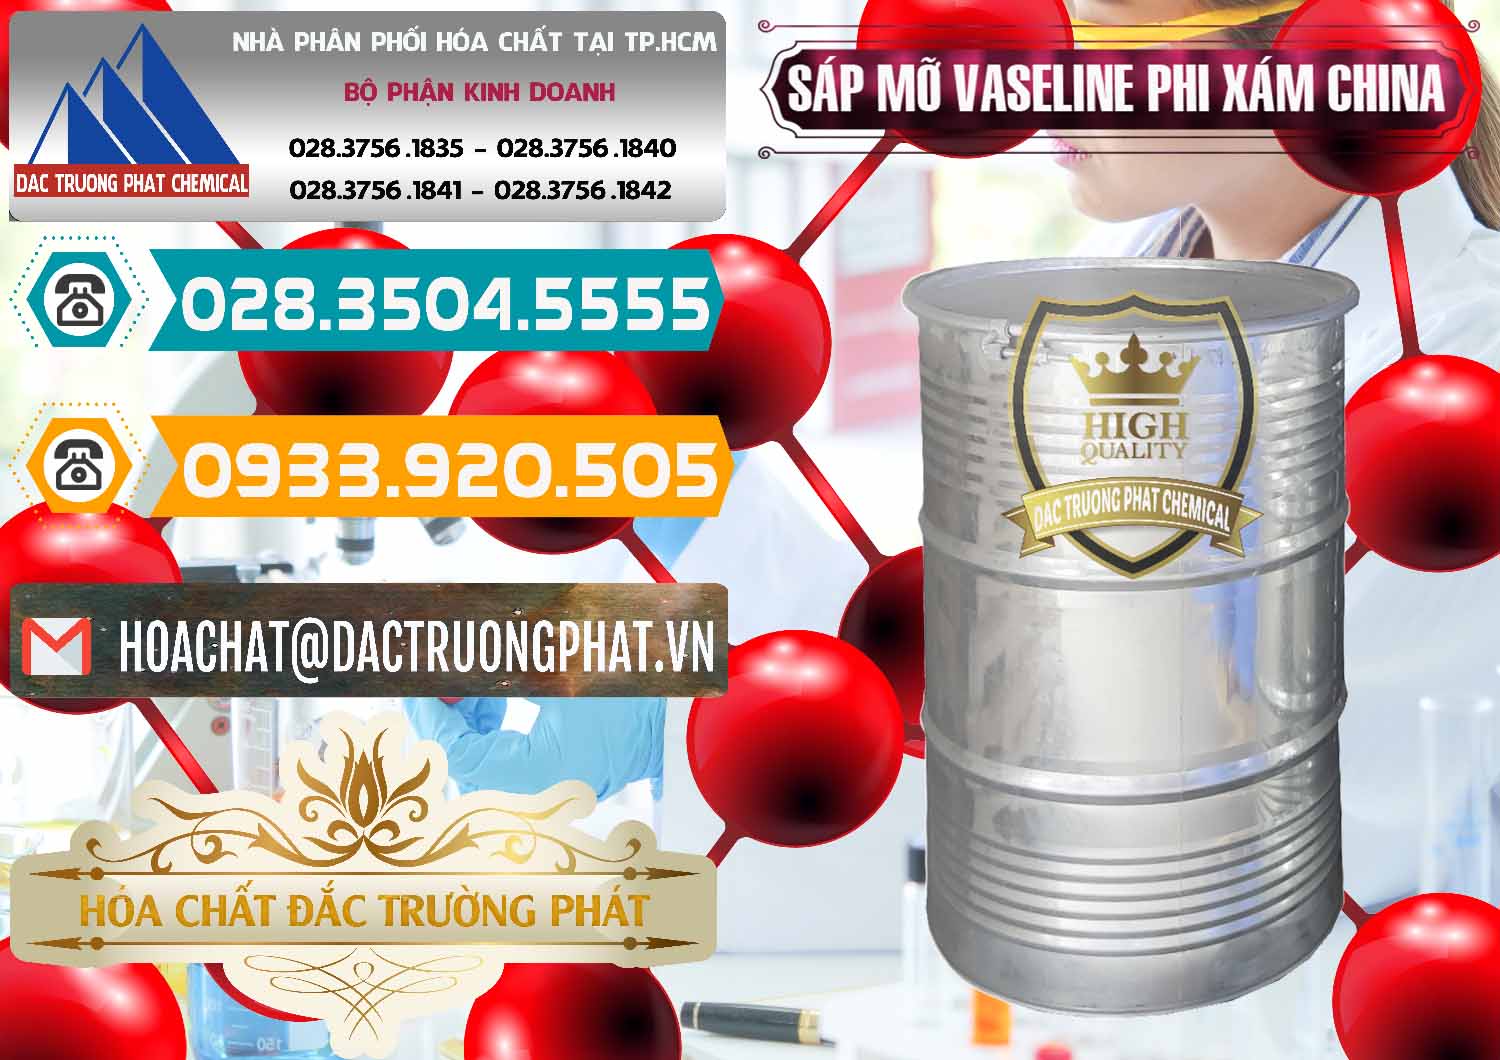 Cty chuyên kinh doanh _ bán Sáp Mỡ Vaseline Phi Xám Trung Quốc China - 0291 - Công ty chuyên kinh doanh _ phân phối hóa chất tại TP.HCM - congtyhoachat.vn